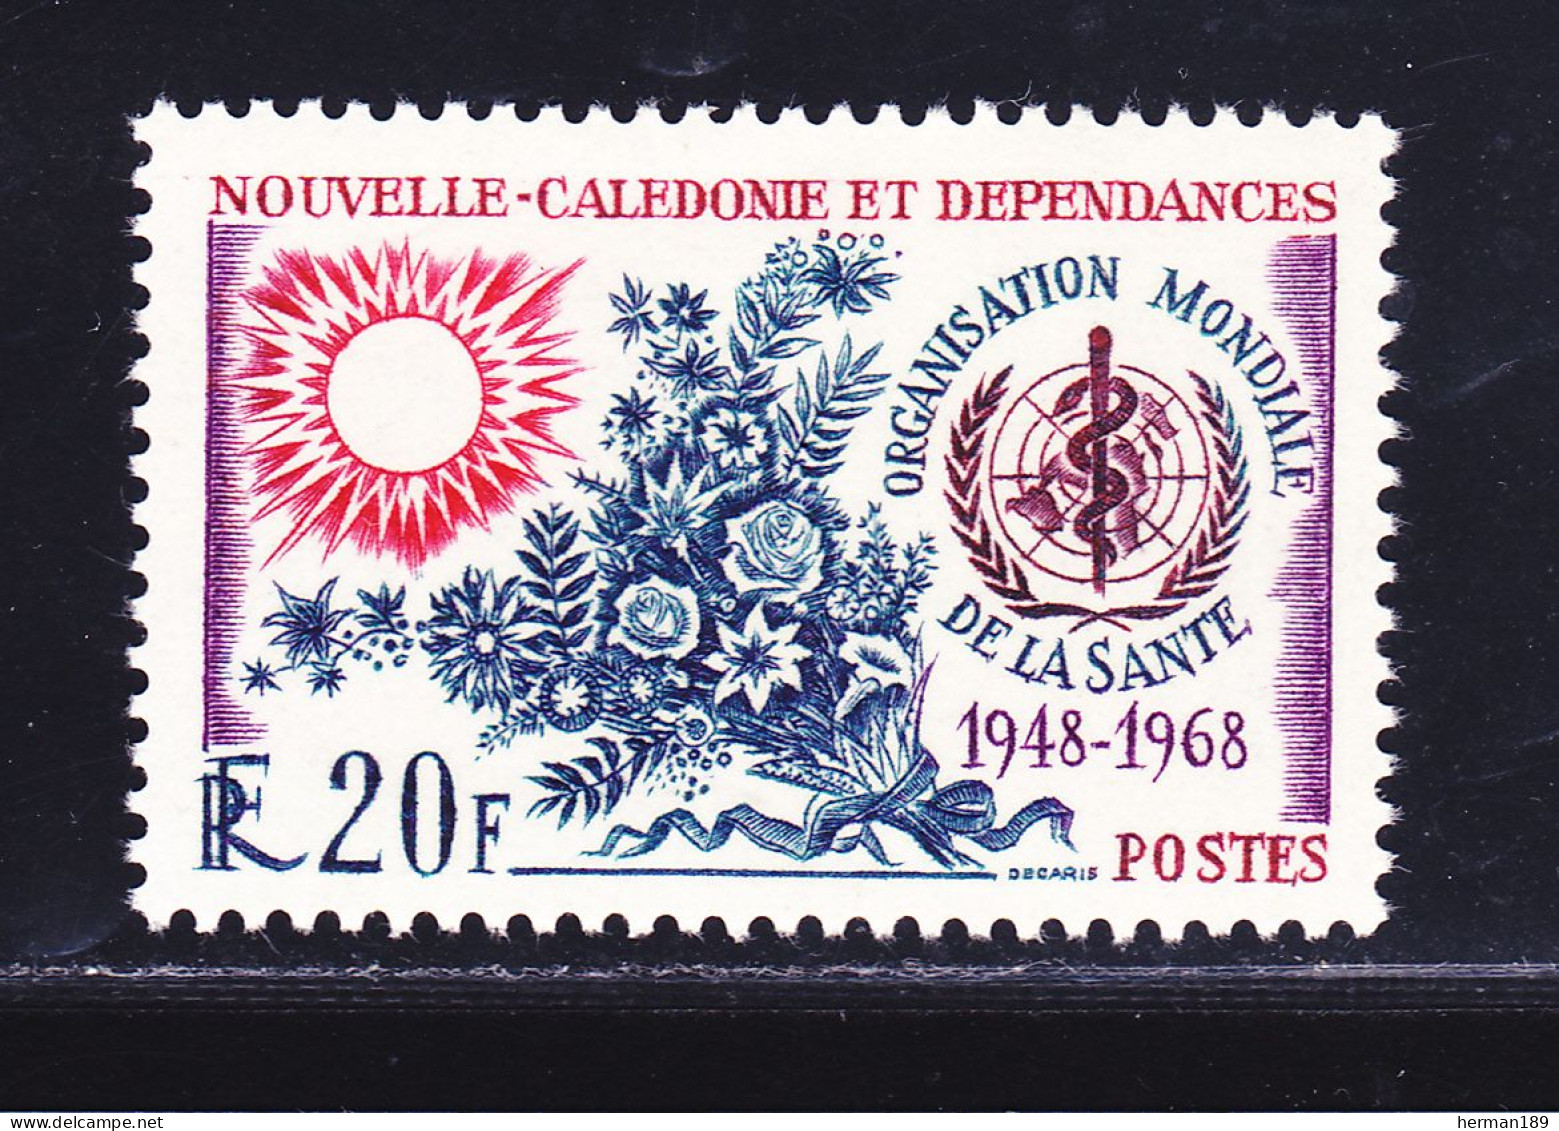 NOUVELLE CALEDONIE N°  351 ** MNH Neuf Sans Charnière, TB (D6771) Anniversaire De L'O.M.S. - 1968 - Nuovi